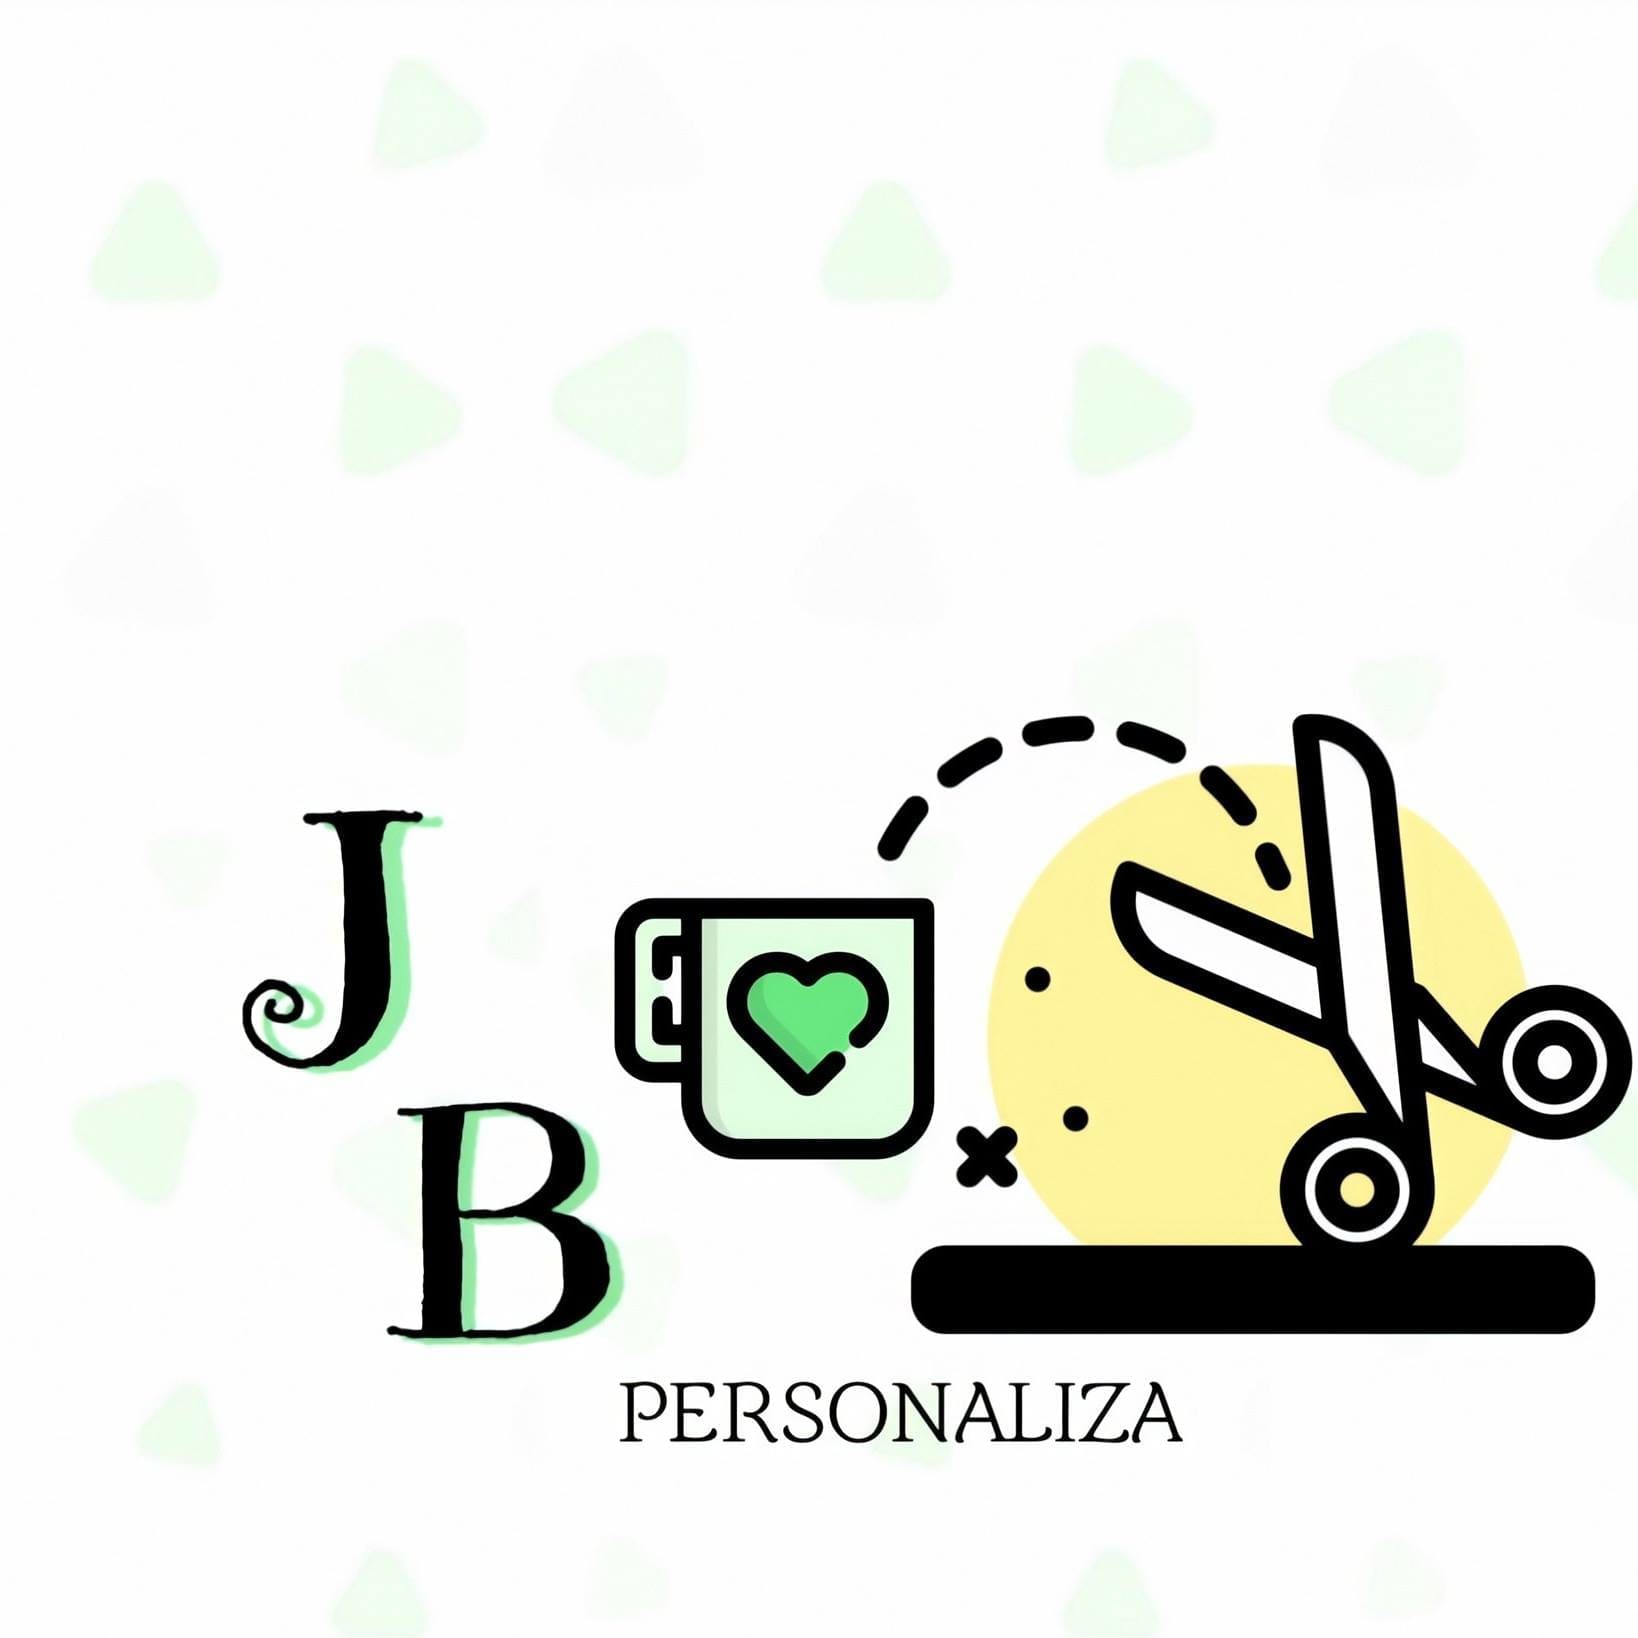 JB Personaliza